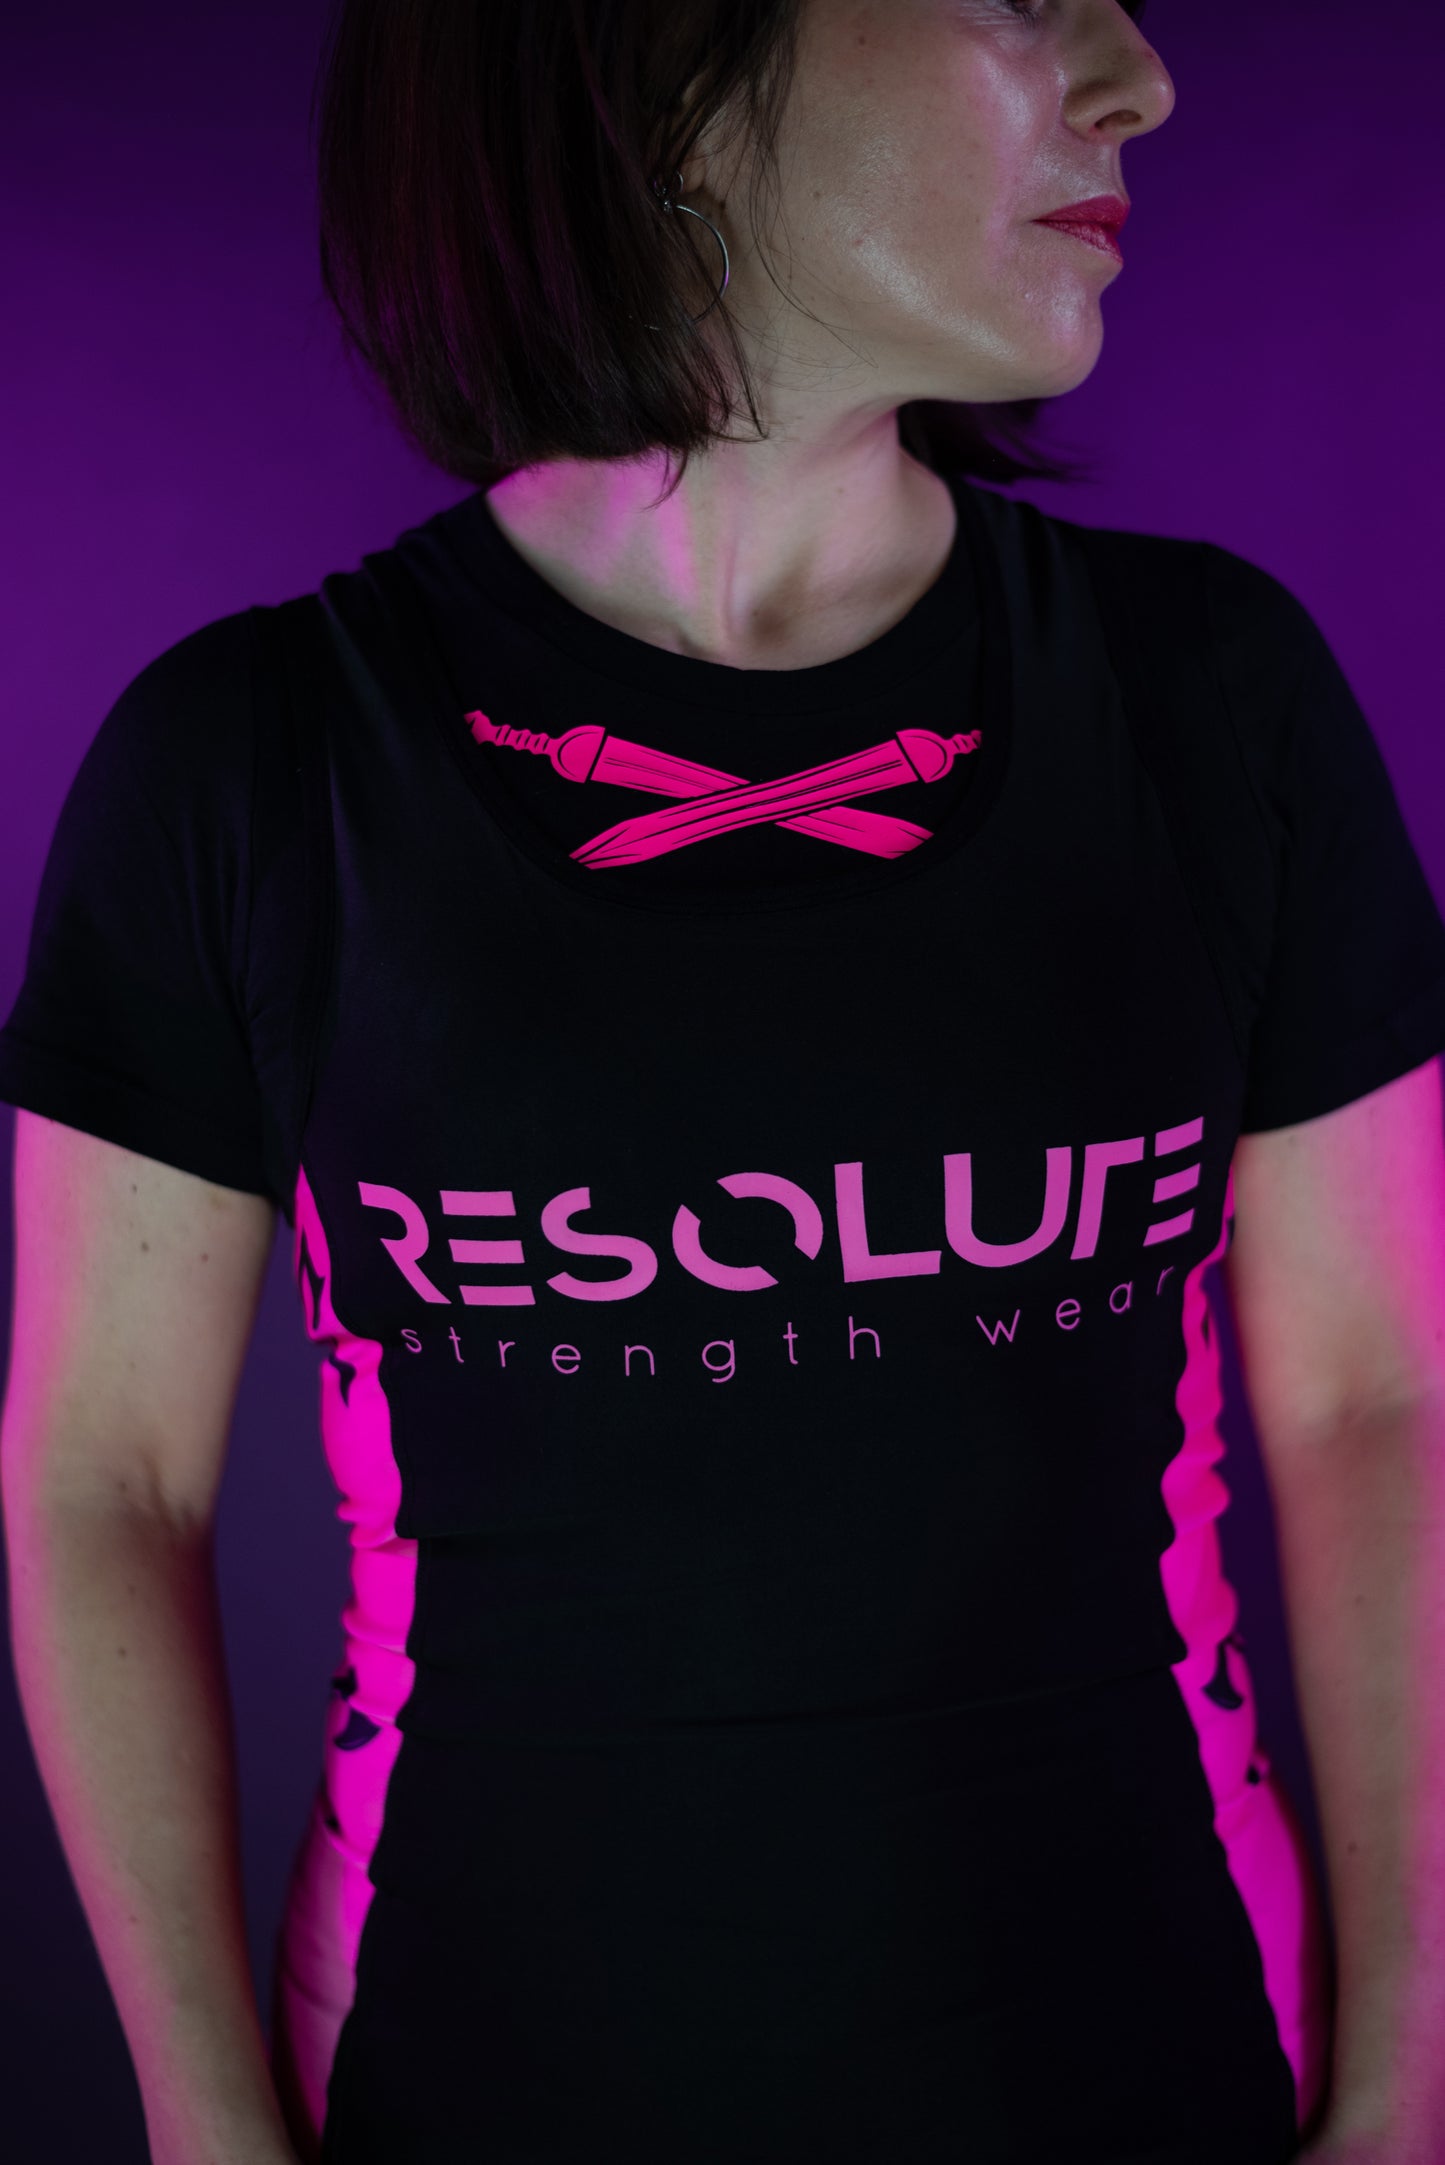 Resolute Pink singlet - Resolute Strength Wear